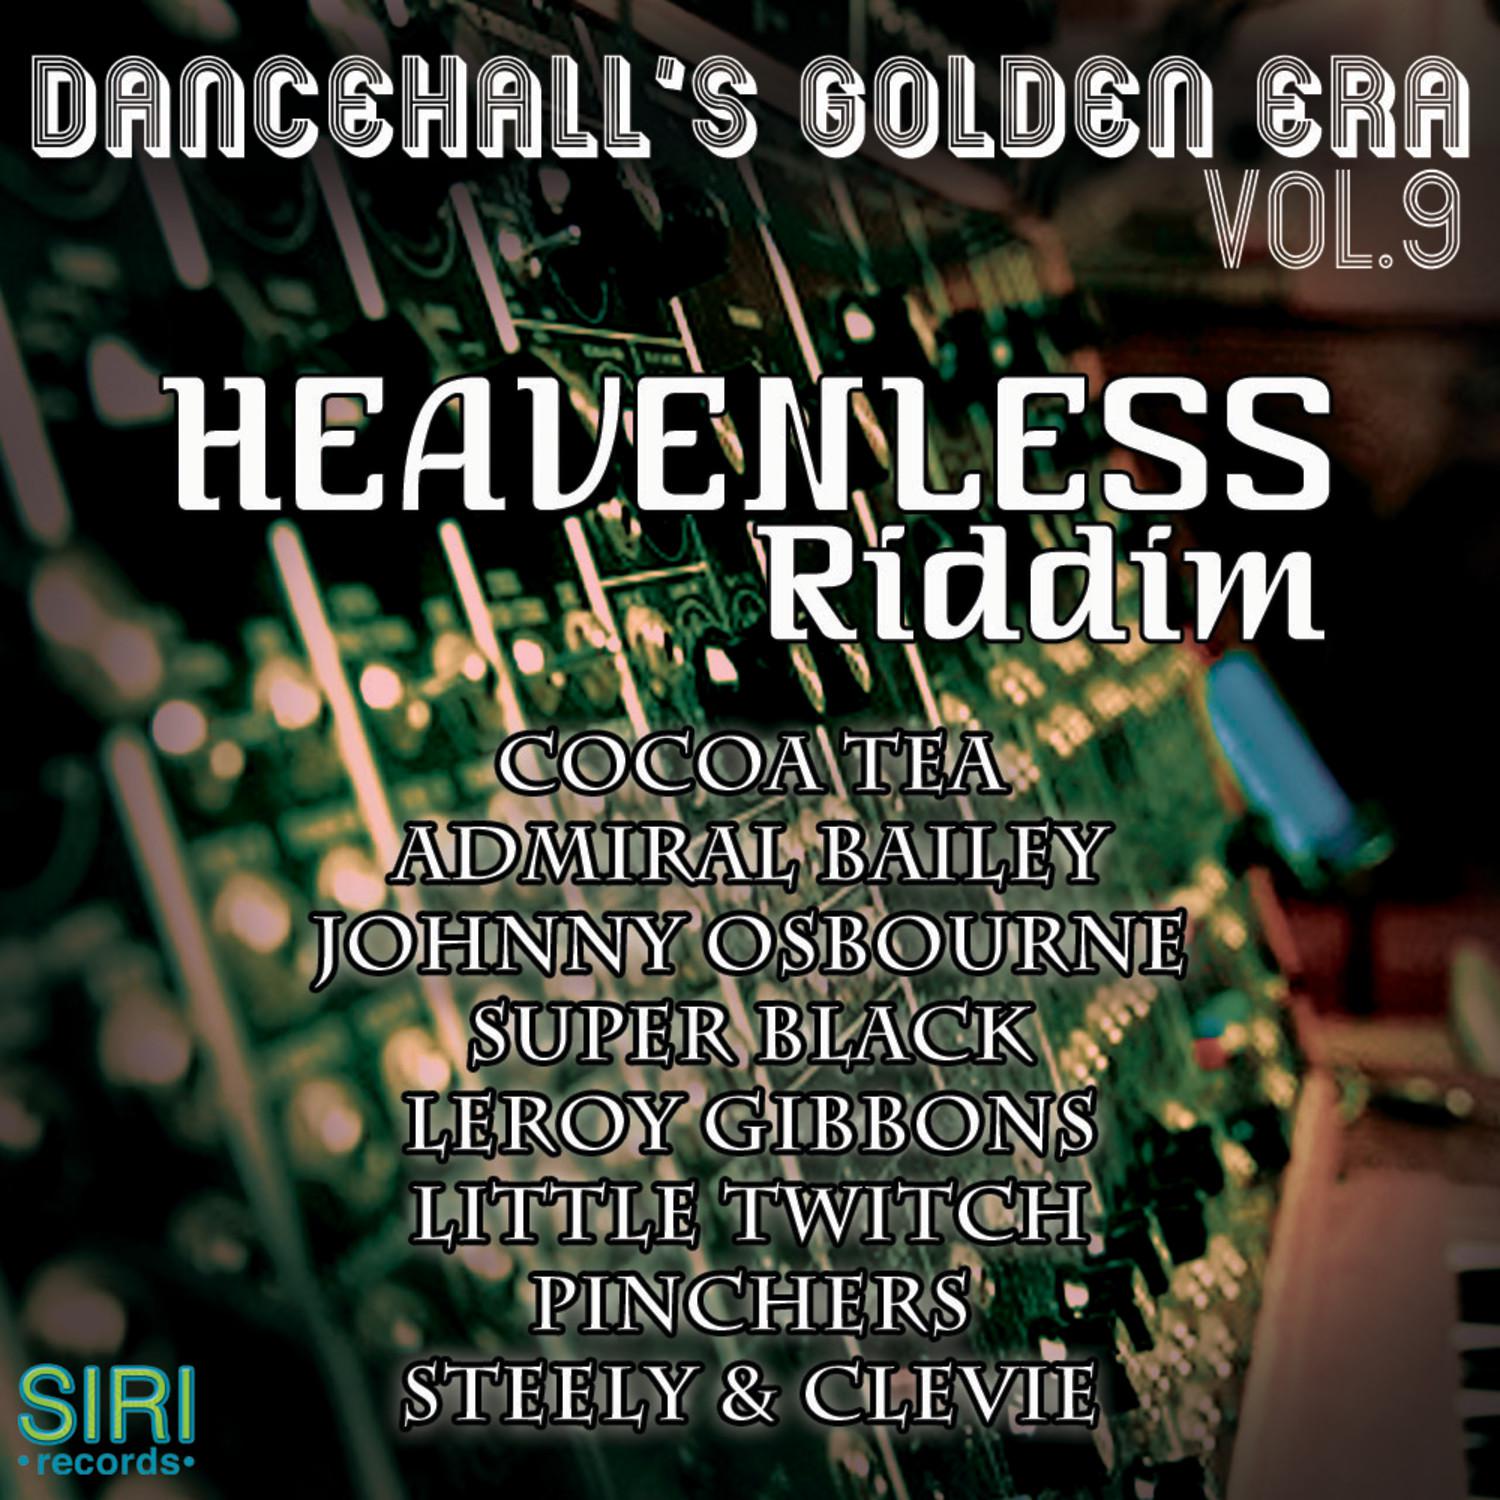 Dancehall's Golden Era Vol.9 - Heavenless Riddim